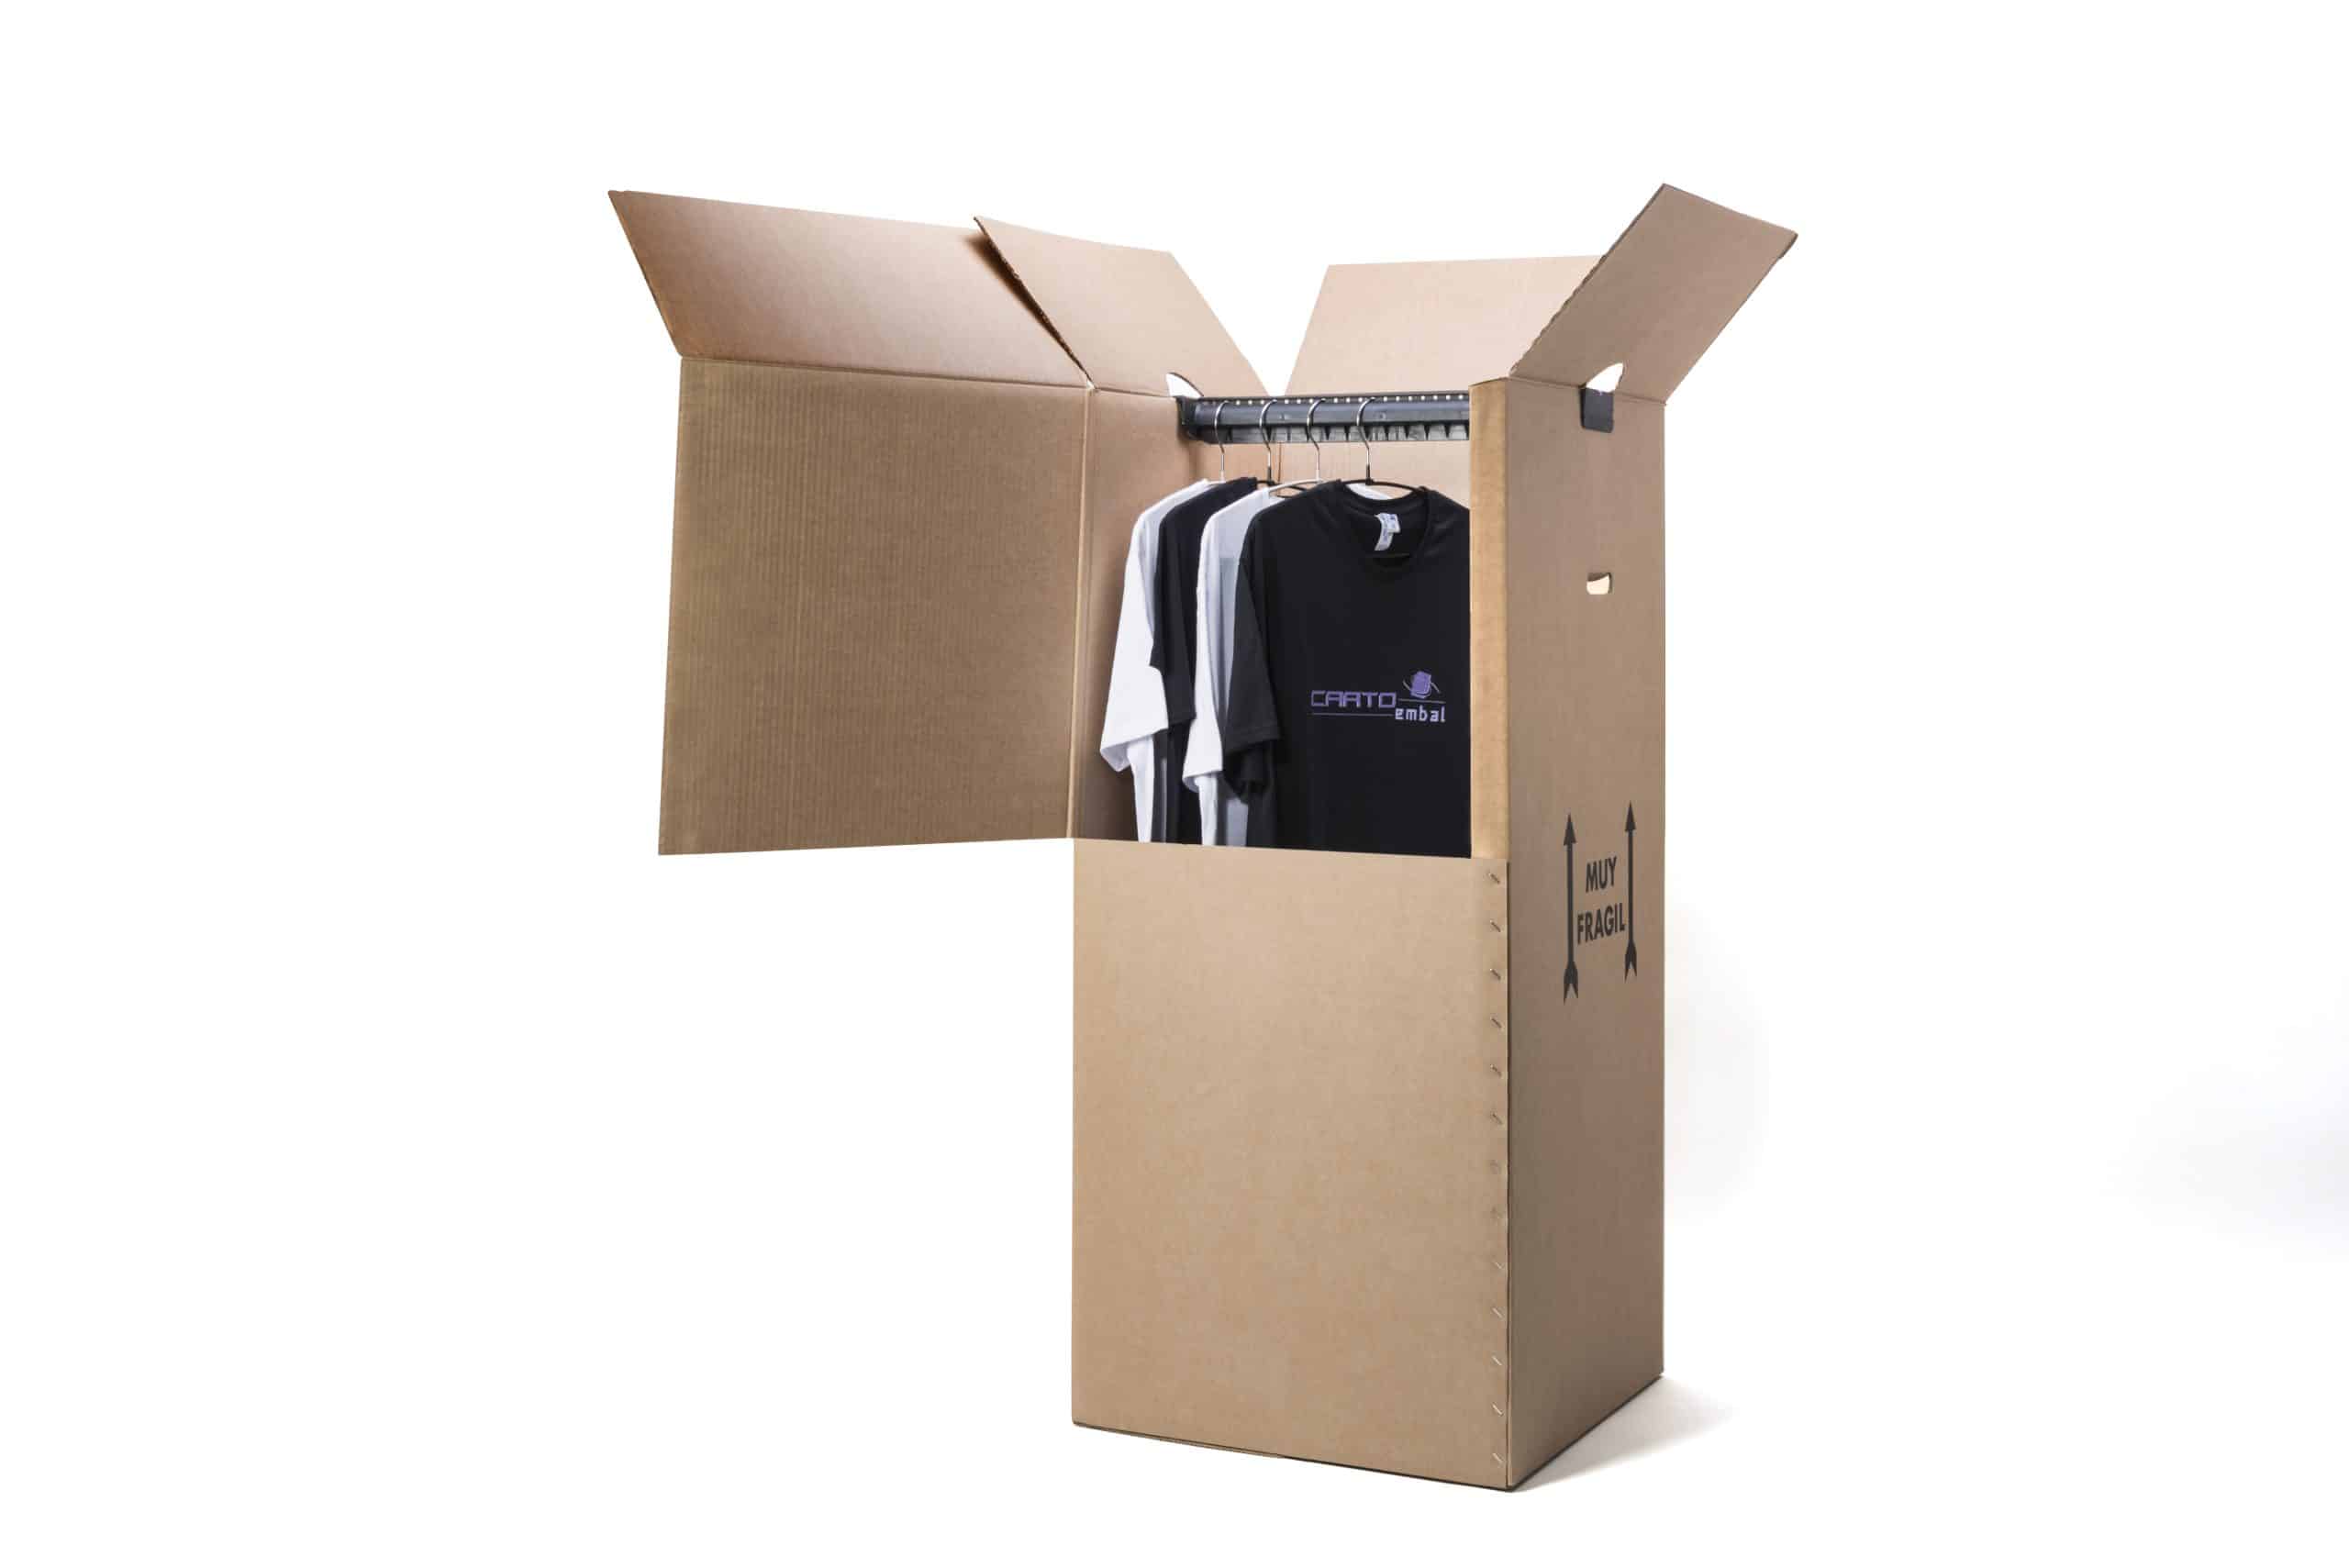 Cajas de cartón para mudanzas, se sirven con barra para perchas. Muy eficaces para traspasos de armarios. Disponemos de modelo estándar en strock.